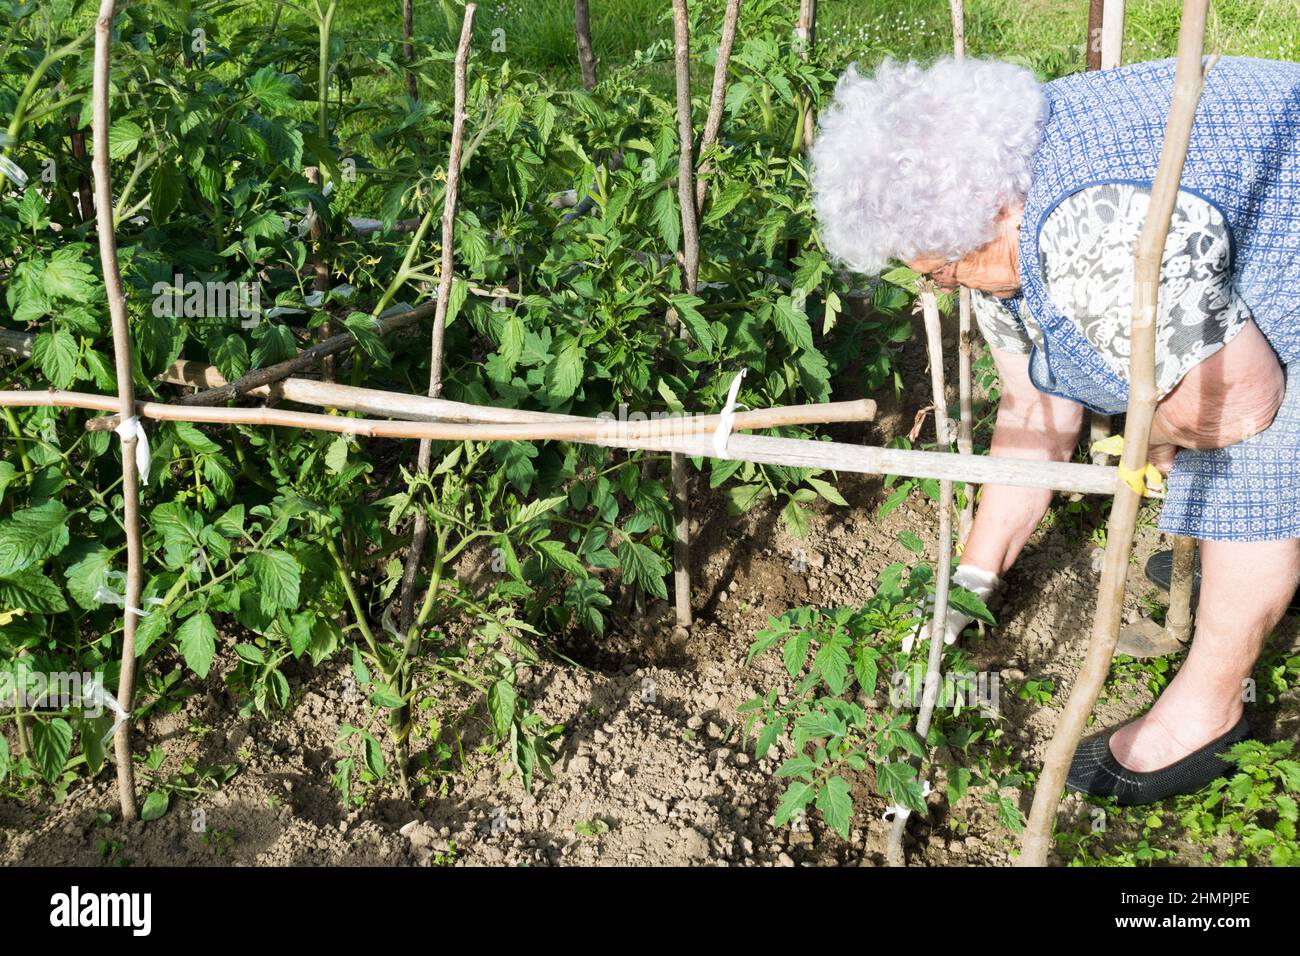 Senior Woman tending to plants in her vegetable garden, Spain Stock Photo